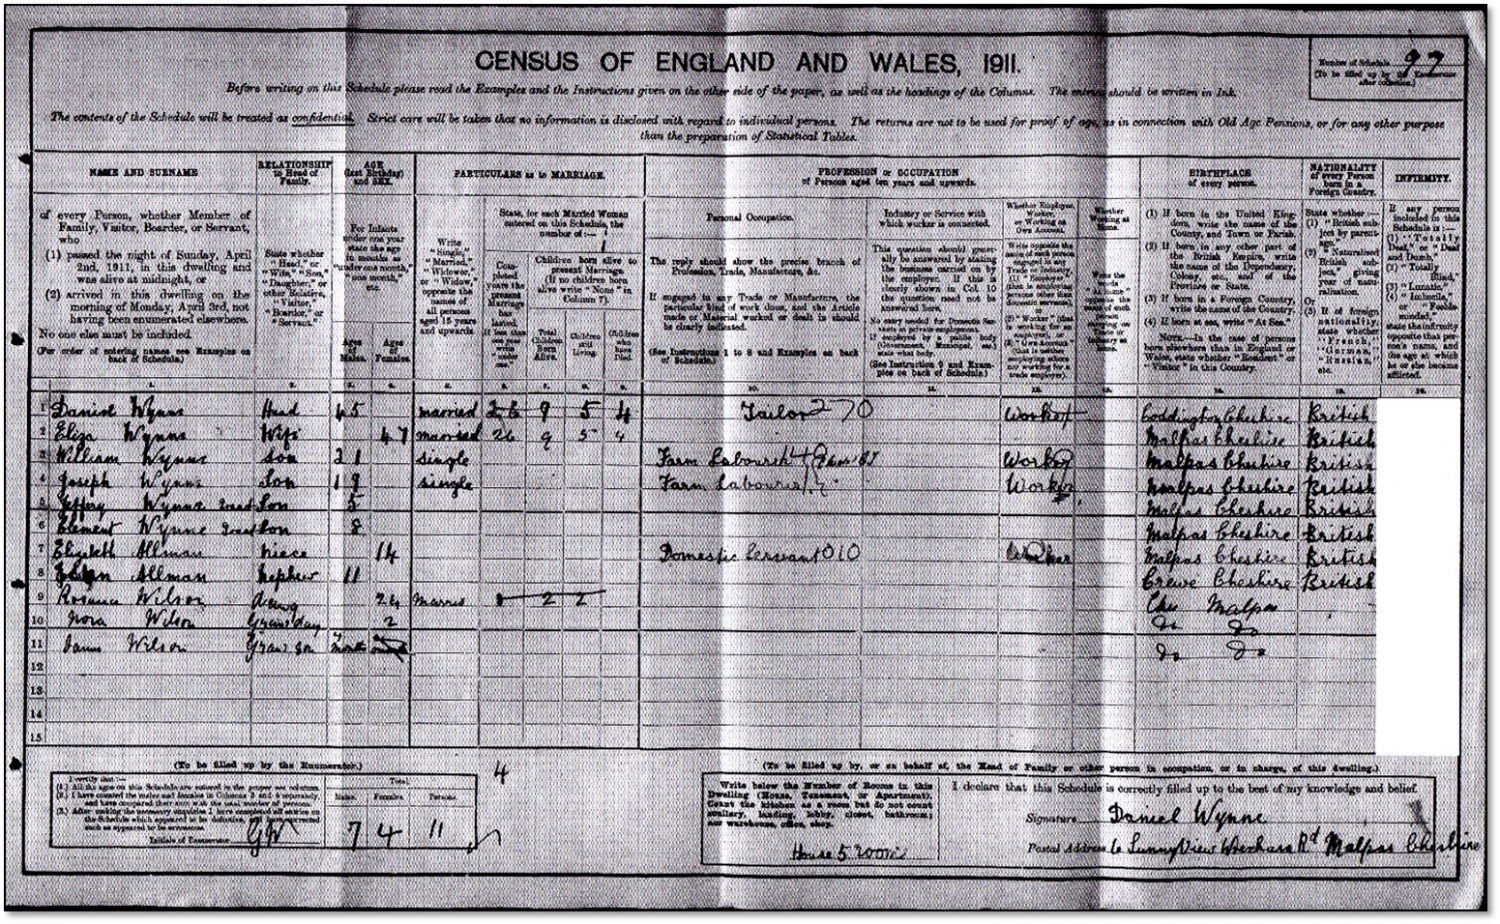 1911 census return